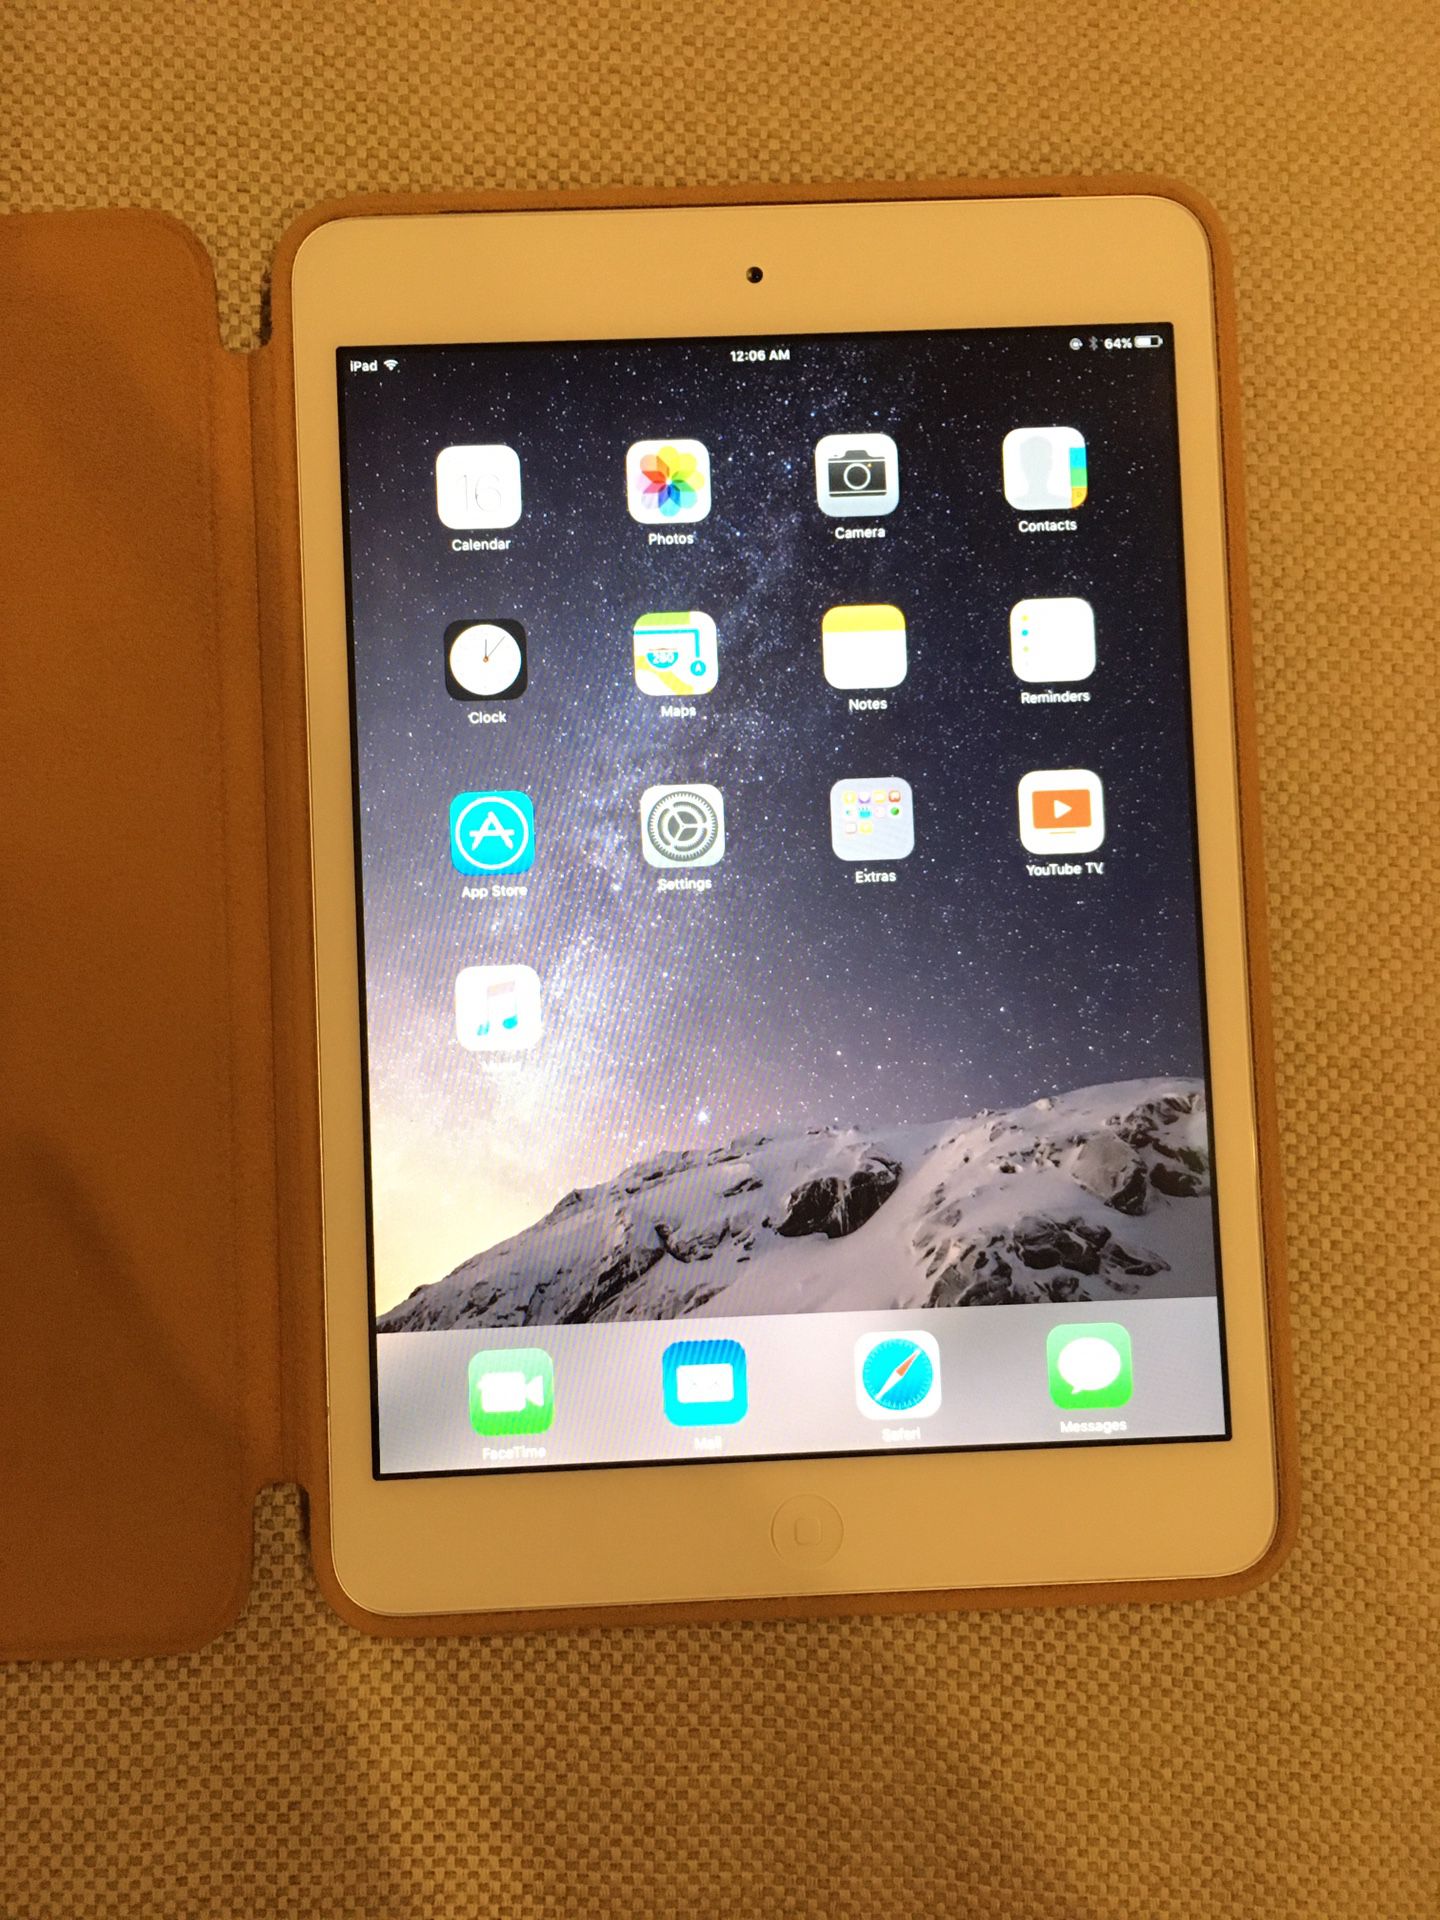 iPad mini 16gb 1st generation